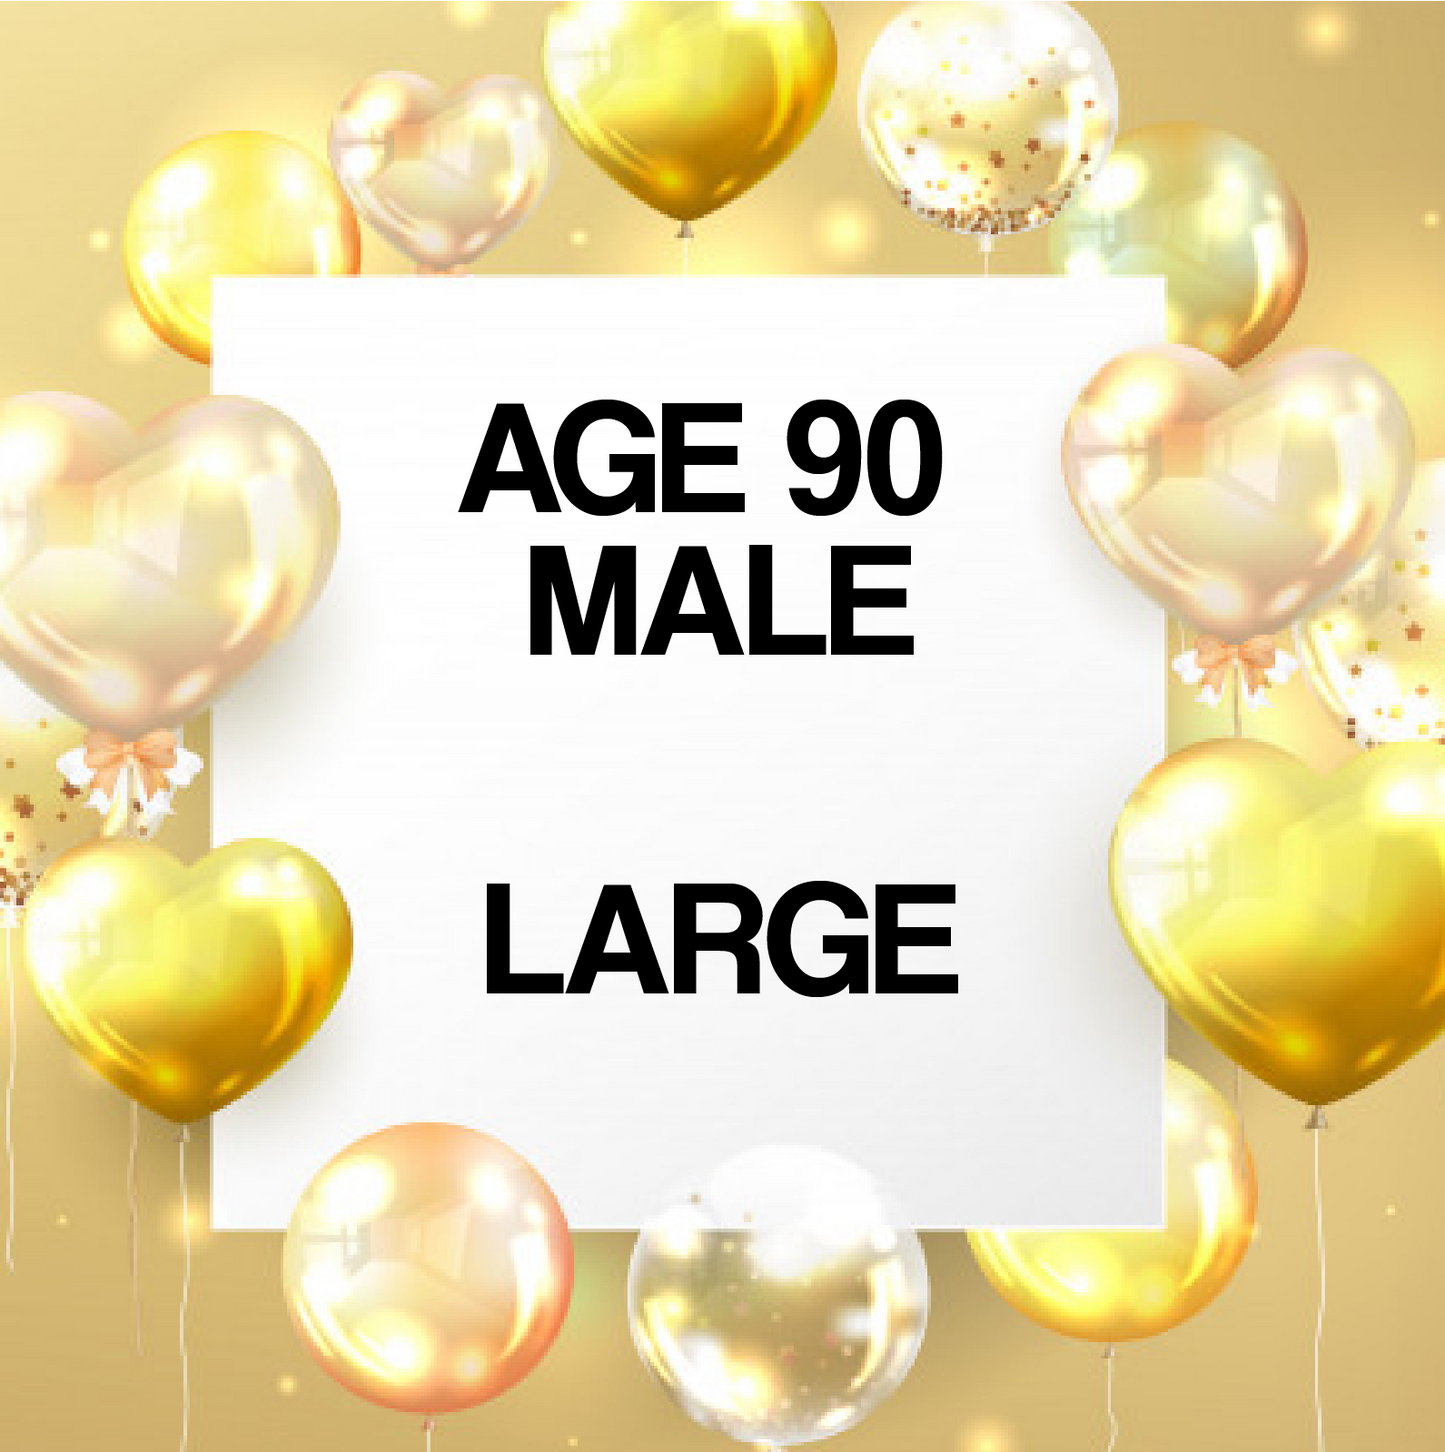 Age 90 Male